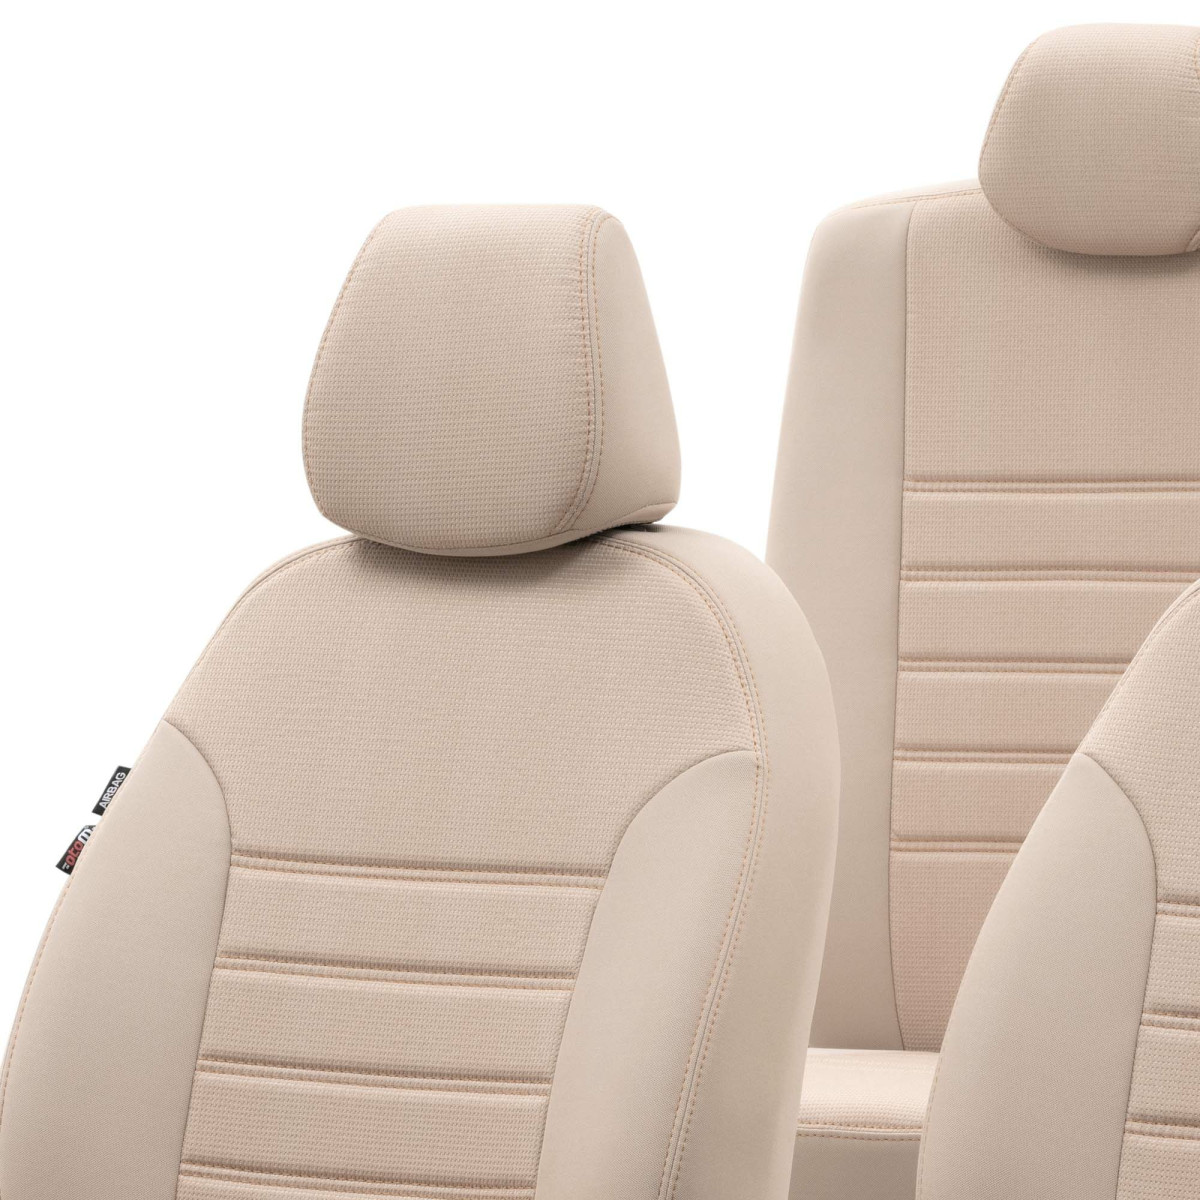 Maßgefertigte Sitzbezüge VERLUX Autositzbezüge ROT für Audi A4 B8